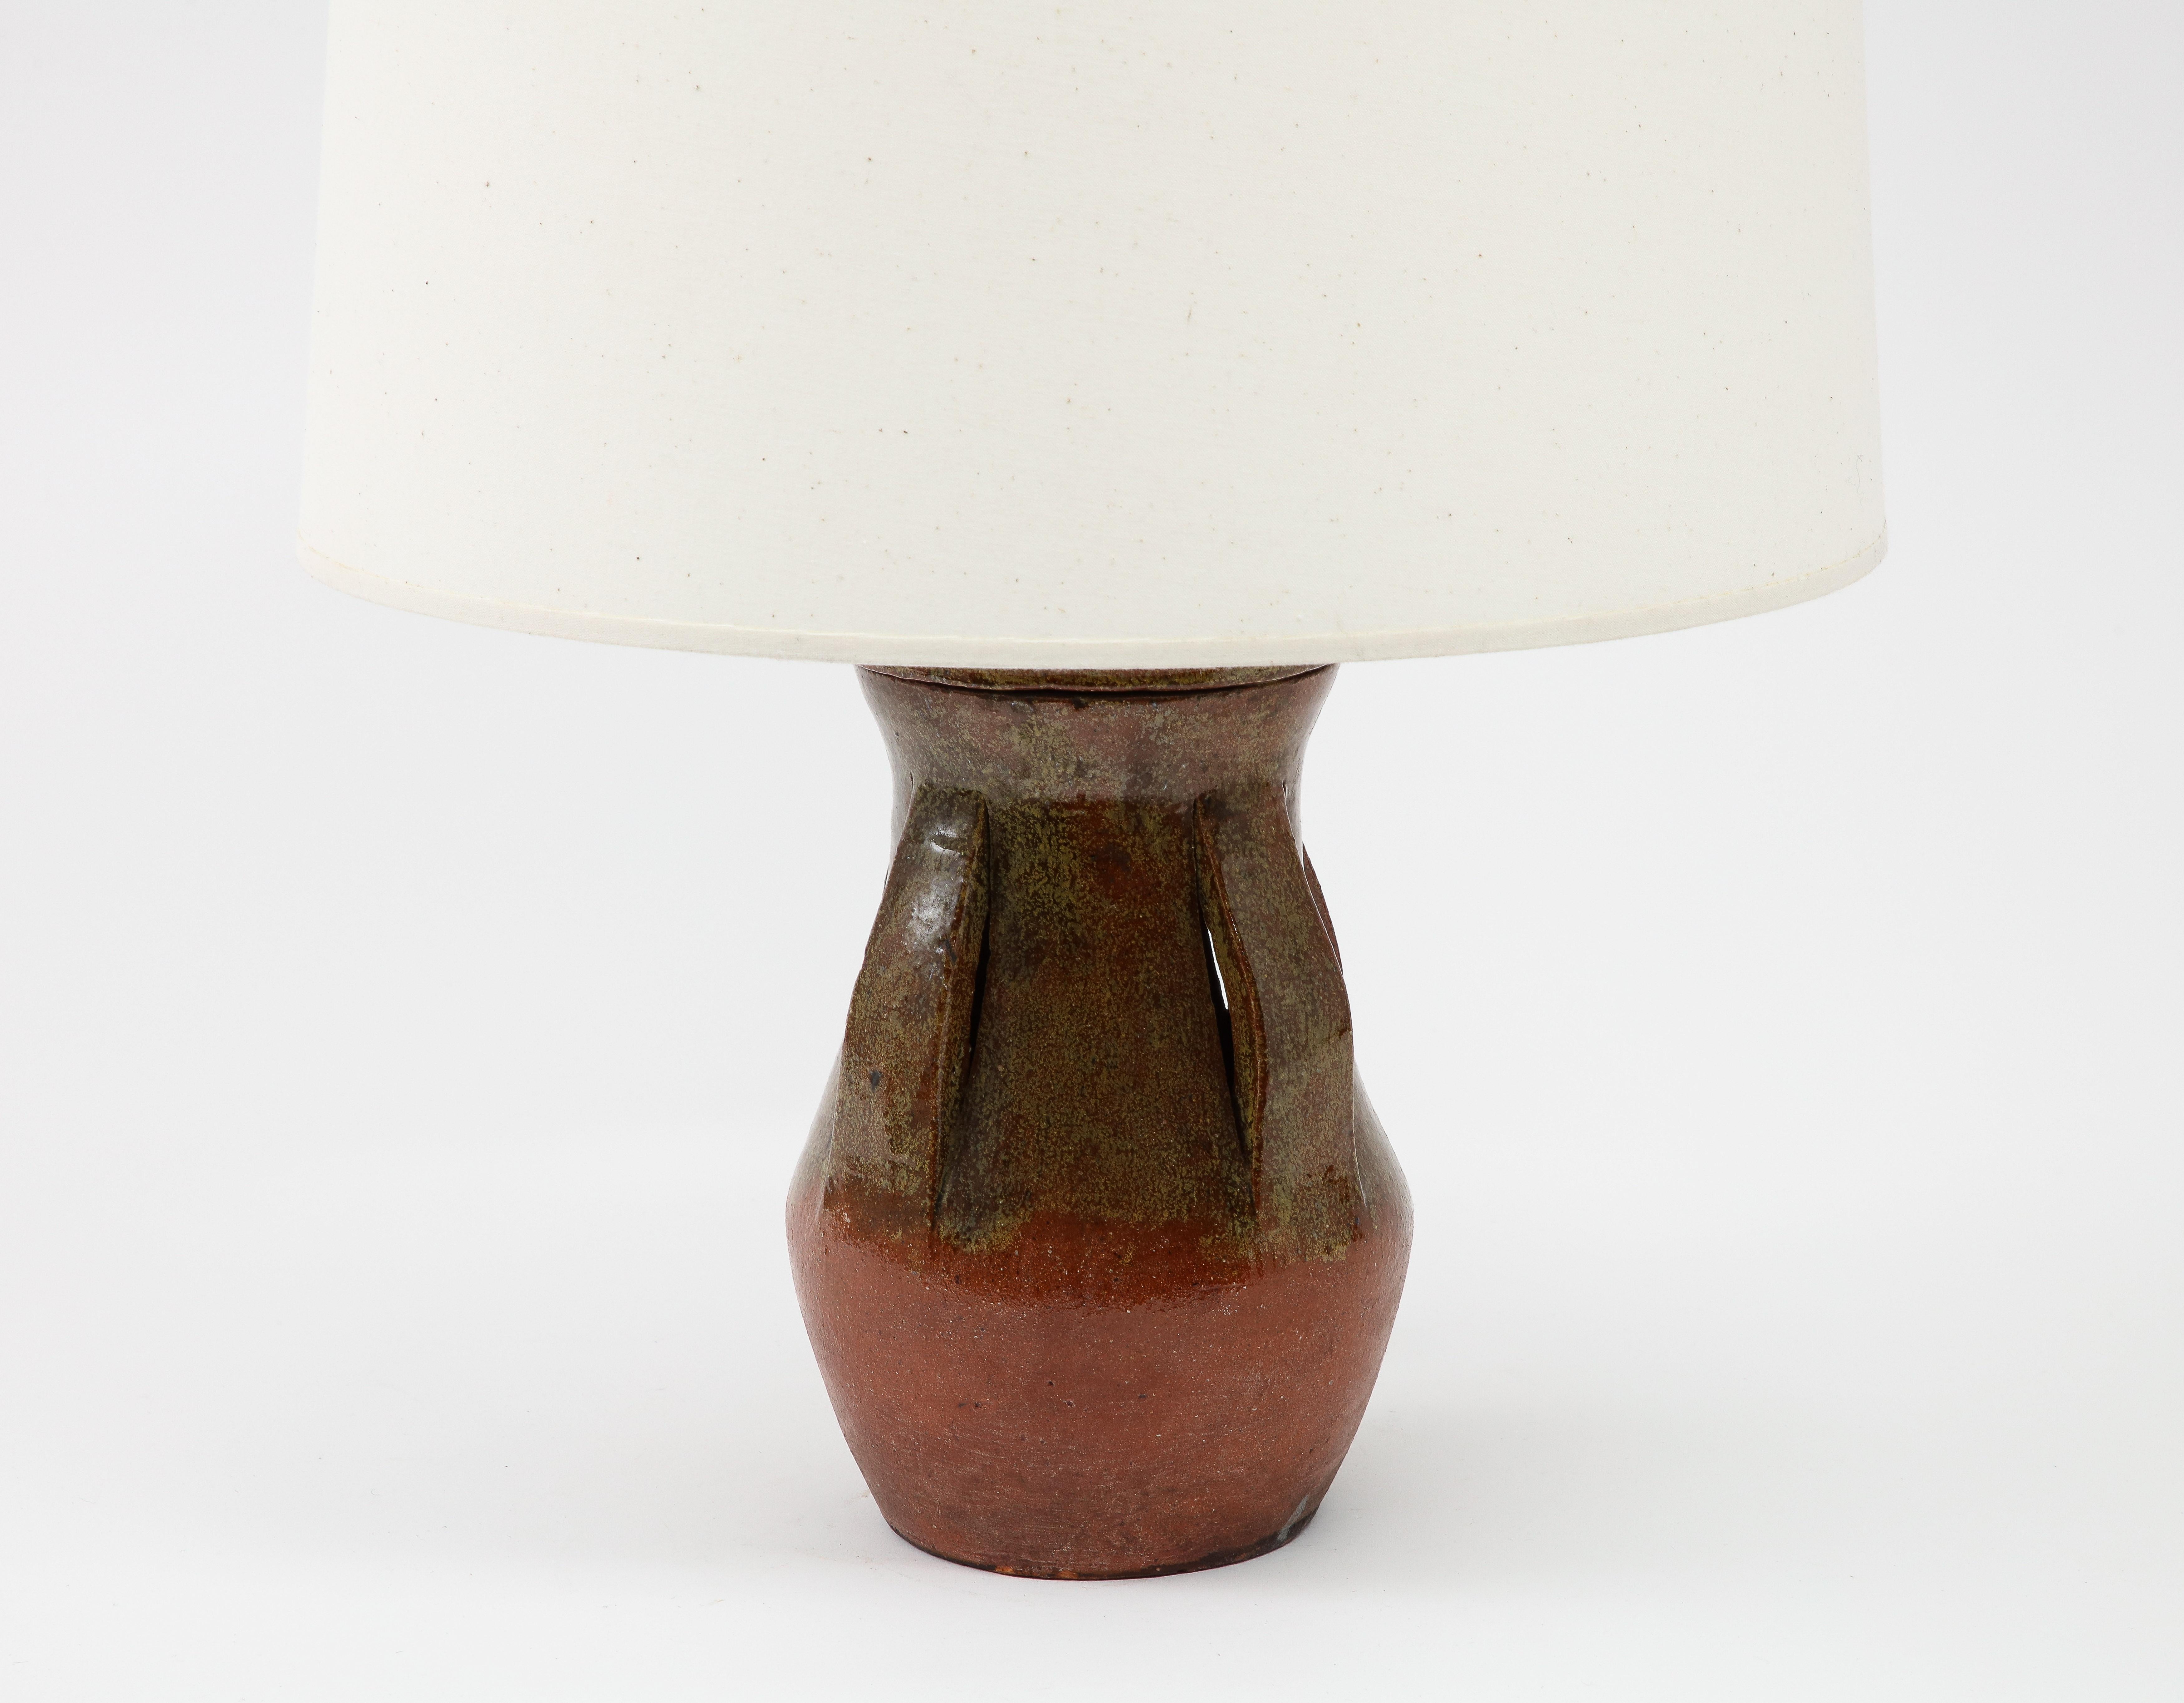 Runde Tischlampe aus Keramik in erdiger Glasur mit Banddekor. Neu verdrahtet mit Sockeln und Seidenschnur. Sockel nur 13